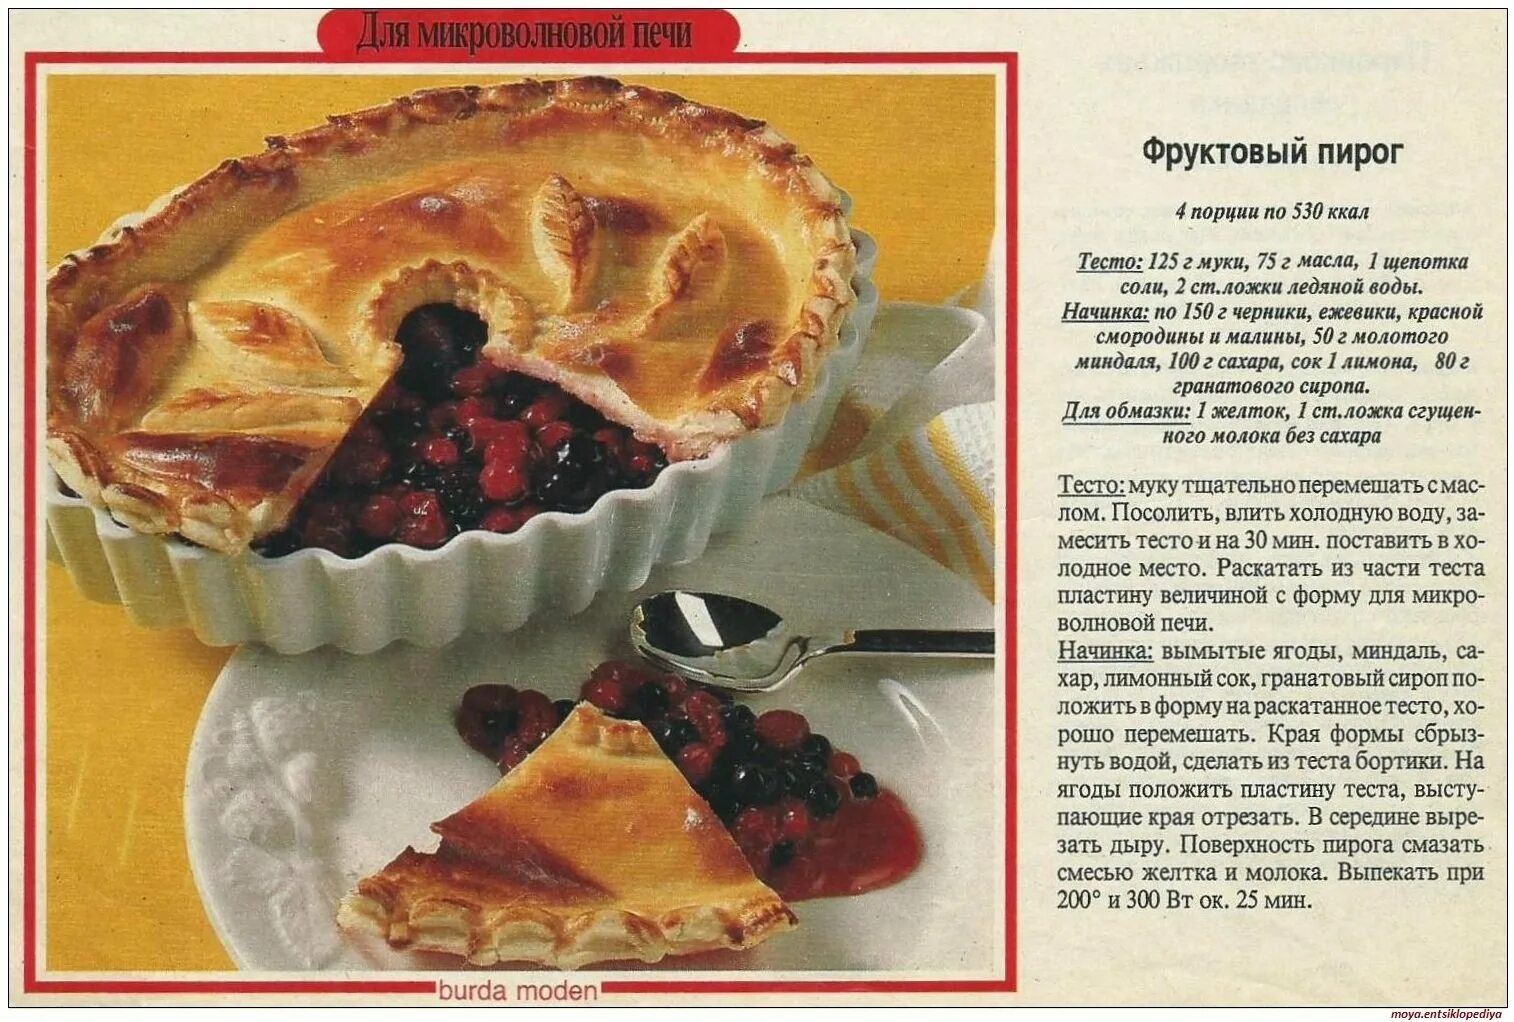 Рецепты выпечки в картинках. Рецепт пирога в картинках. Картинки рецепты пироги. Пироги домашние с картинками и рецептами.